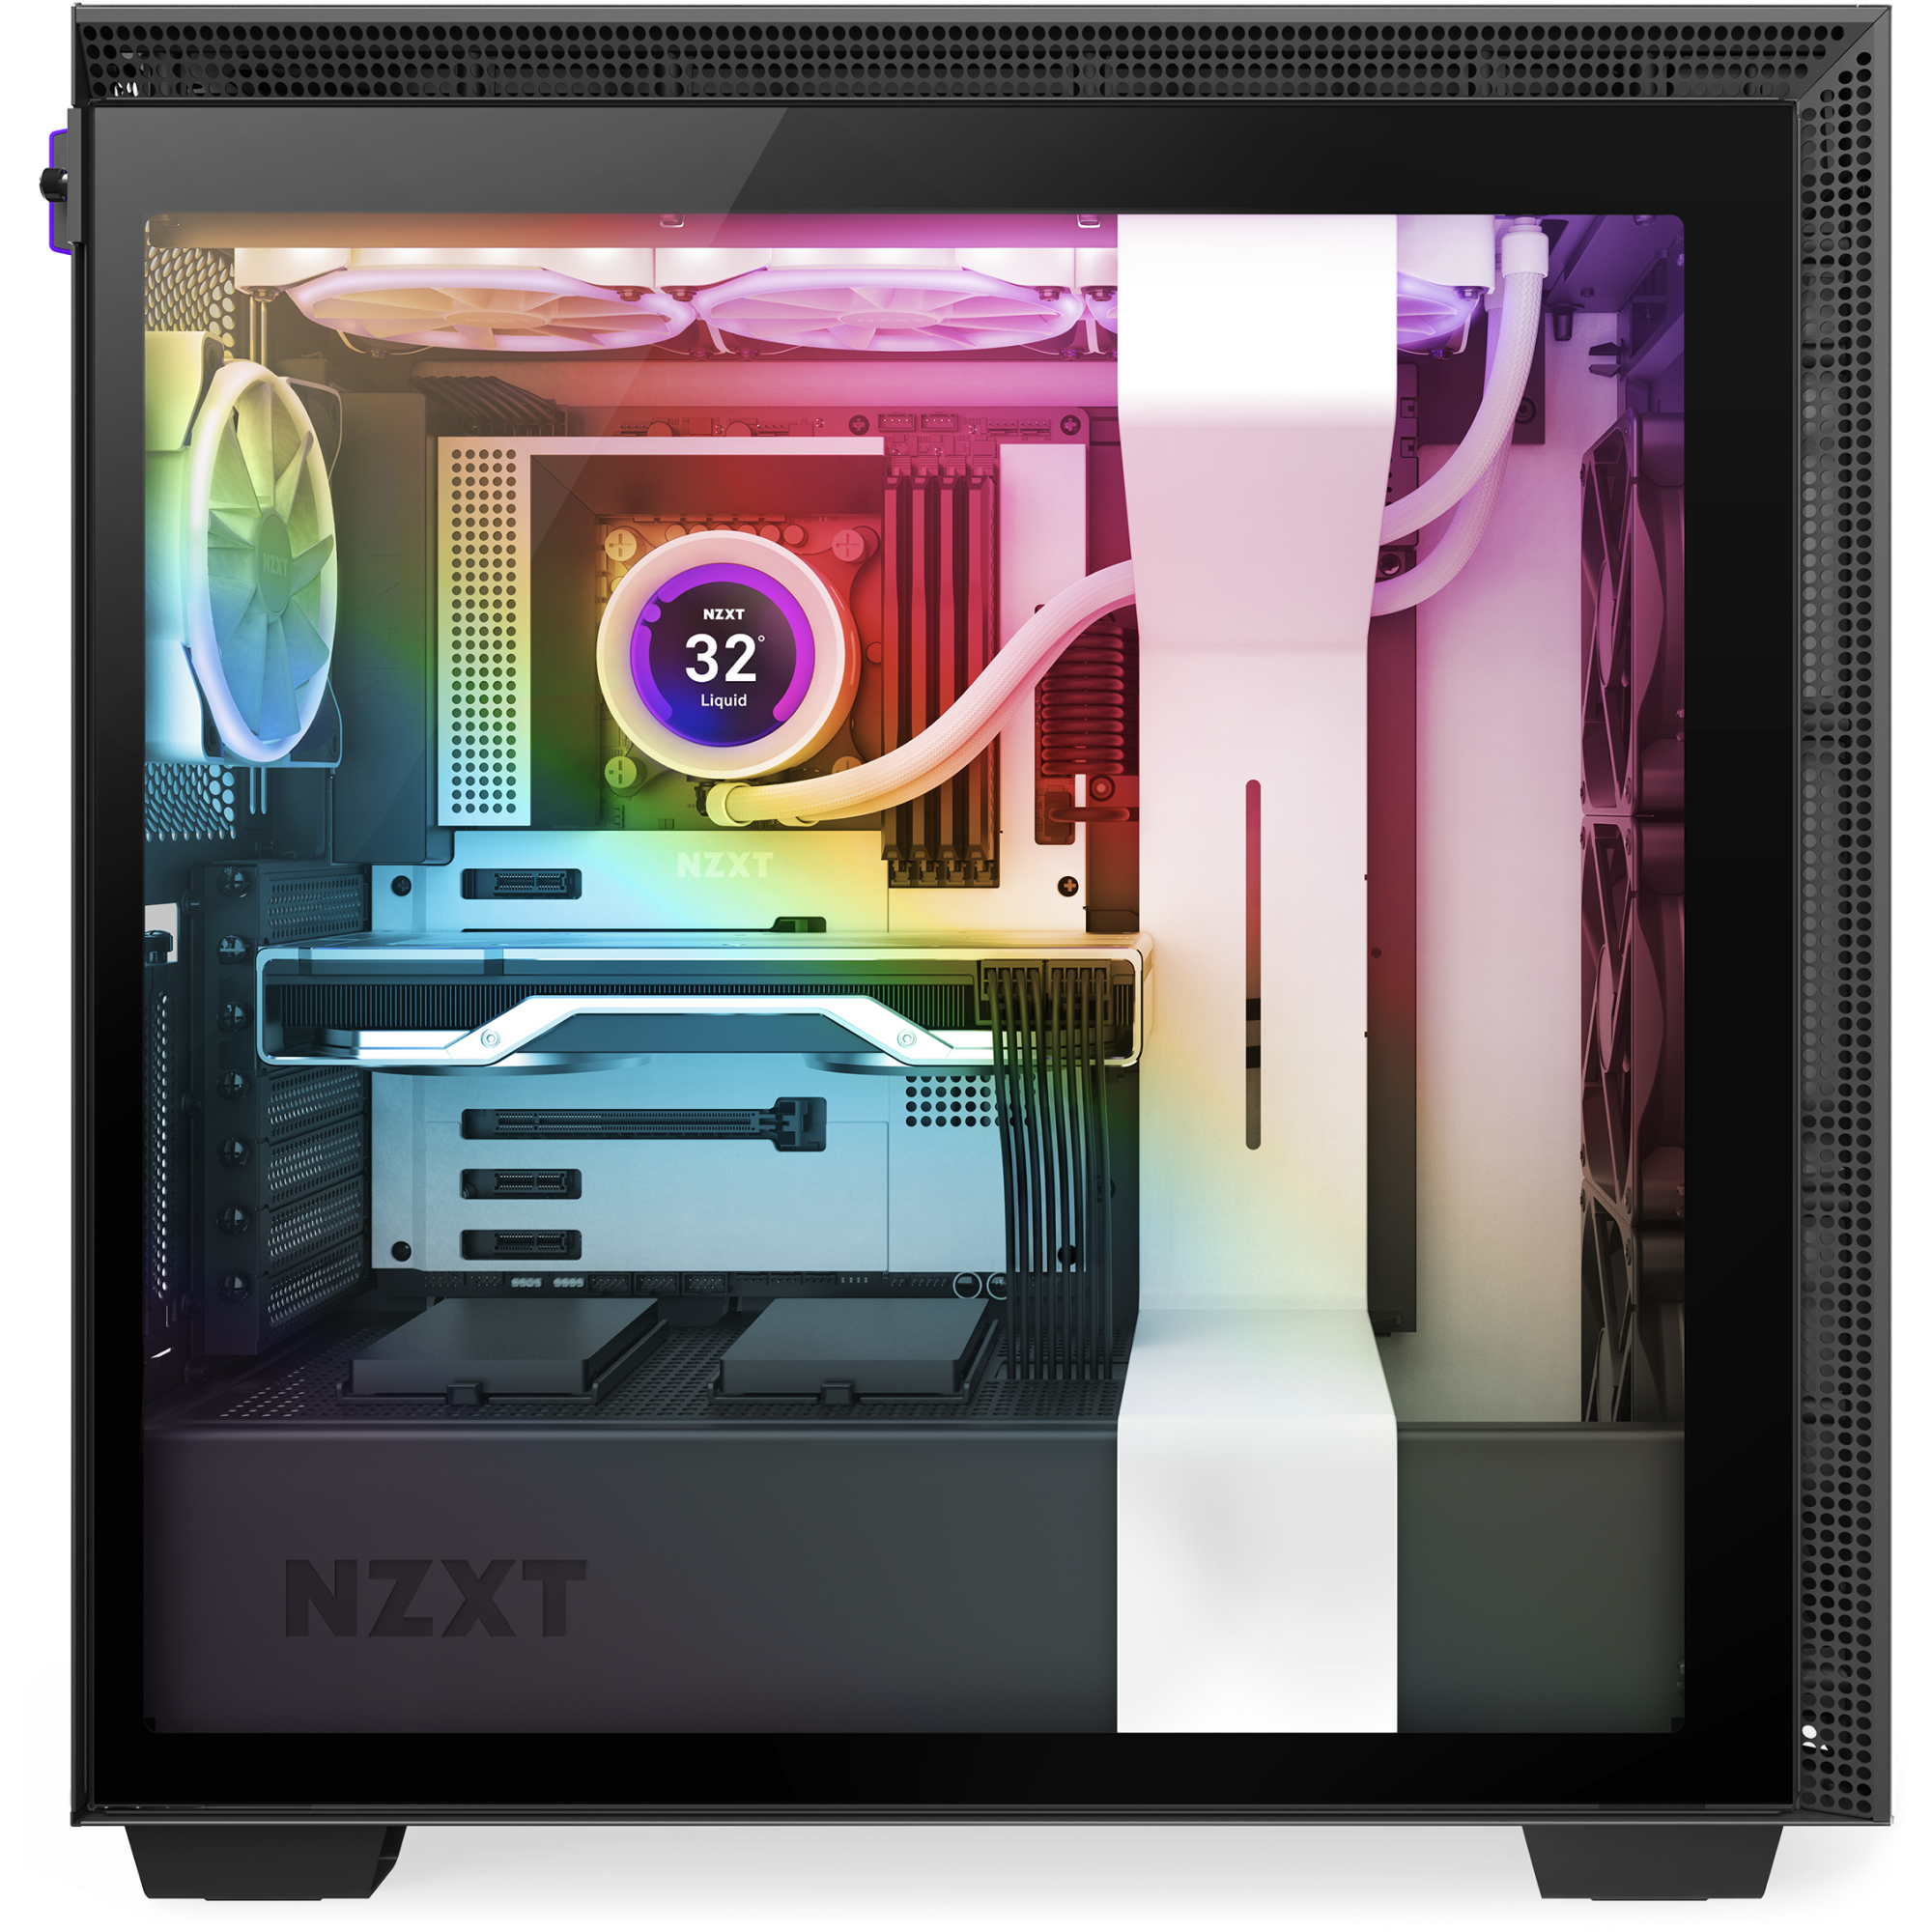 Kraken Z73 RGB | LCD CPU Coolers | Gaming PCs | NZXT